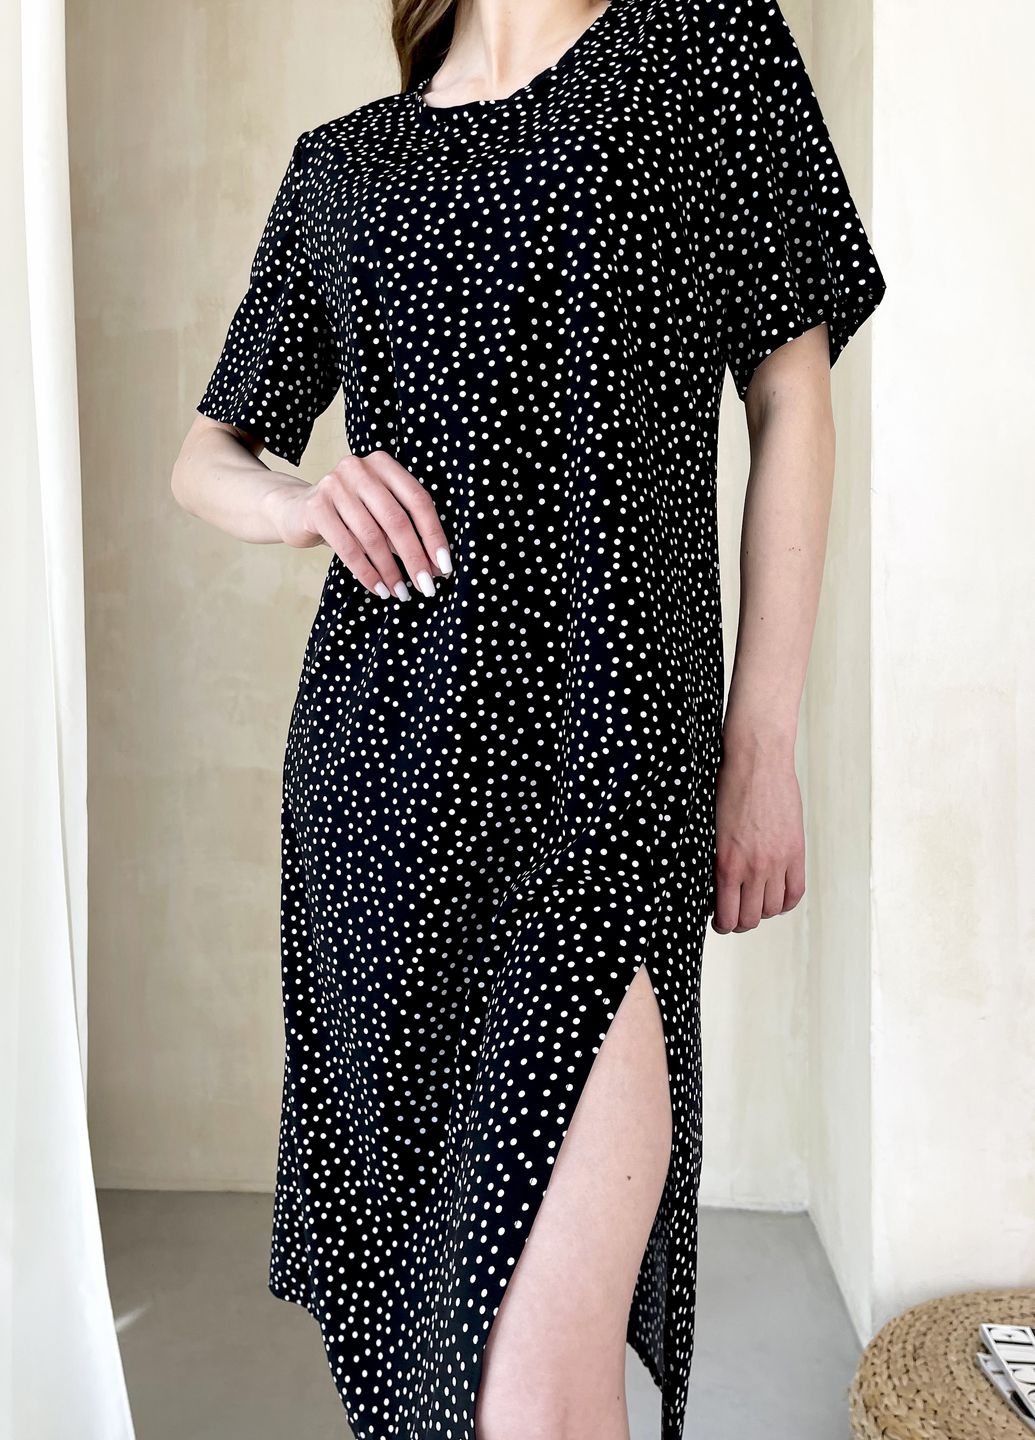 Купить Женское платье до колена в горох с разрезом и пояском черное Merlini Асти 700000201, размер 42-44 (S-M) в интернет-магазине